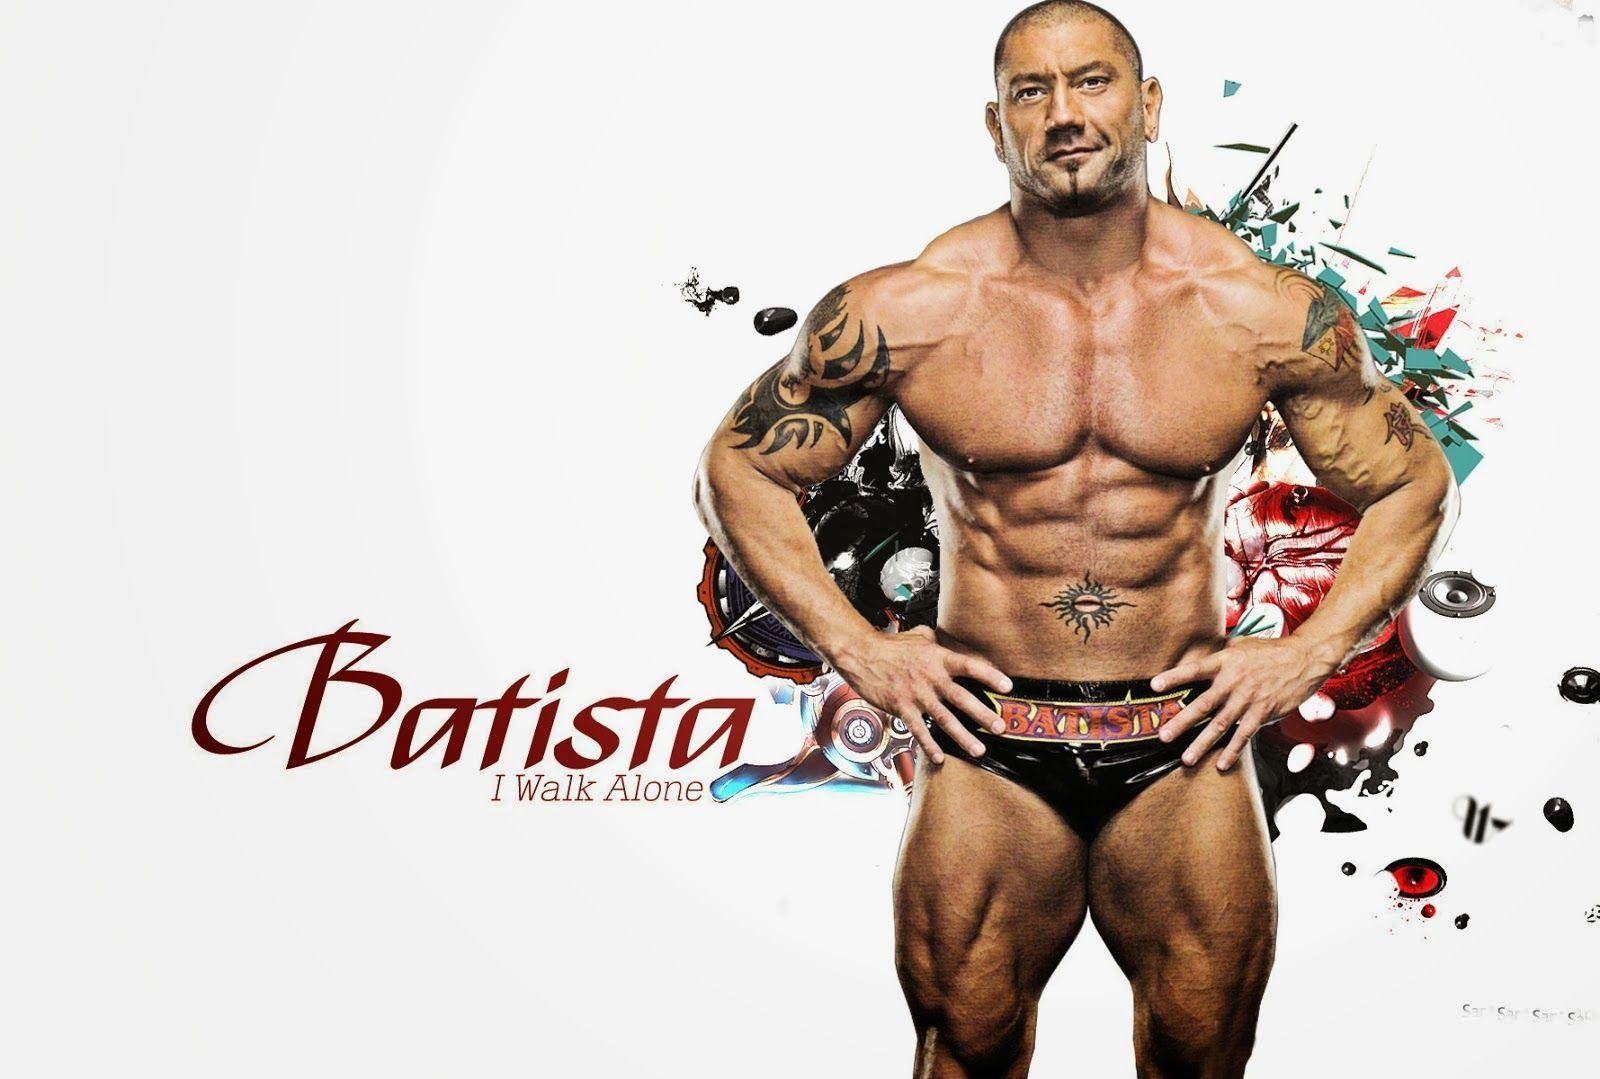 Batista The Animal Shirtless HD WWE Wallpaper